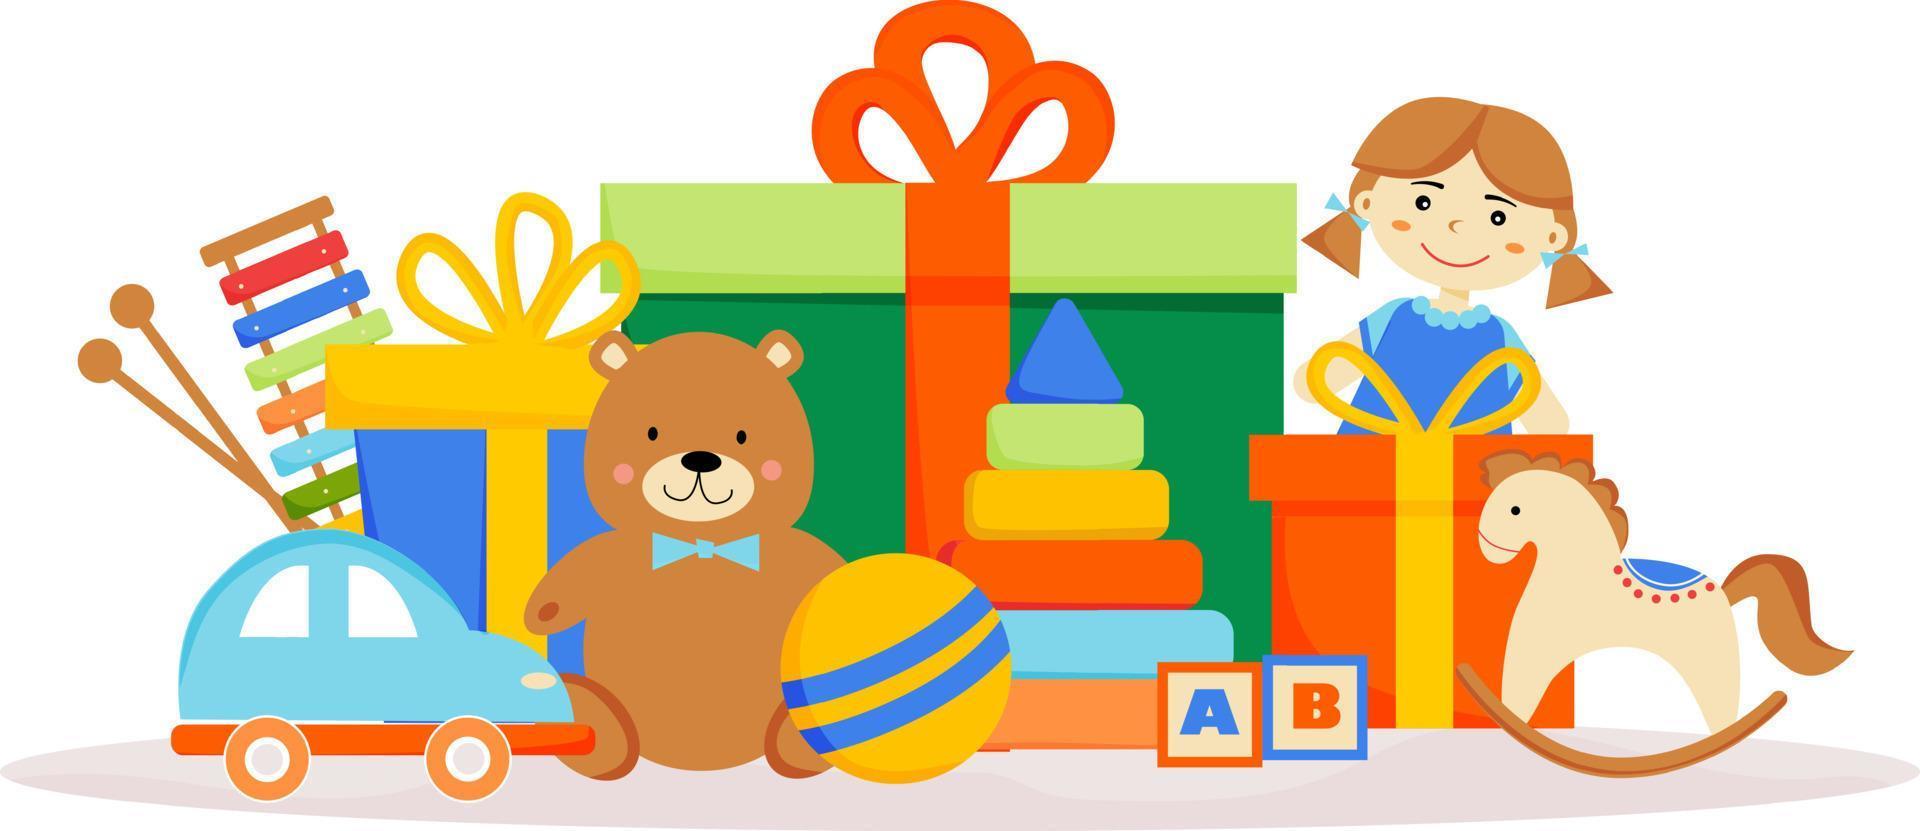 giocattoli sullo sfondo di scatole regalo. regali di compleanno. Scatole colorate con regali. orsacchiotto, bambola, macchina, palla, cavallo, piramide, cubi, ksilofon. poster, banner, carta per negozio, negozio. vettore